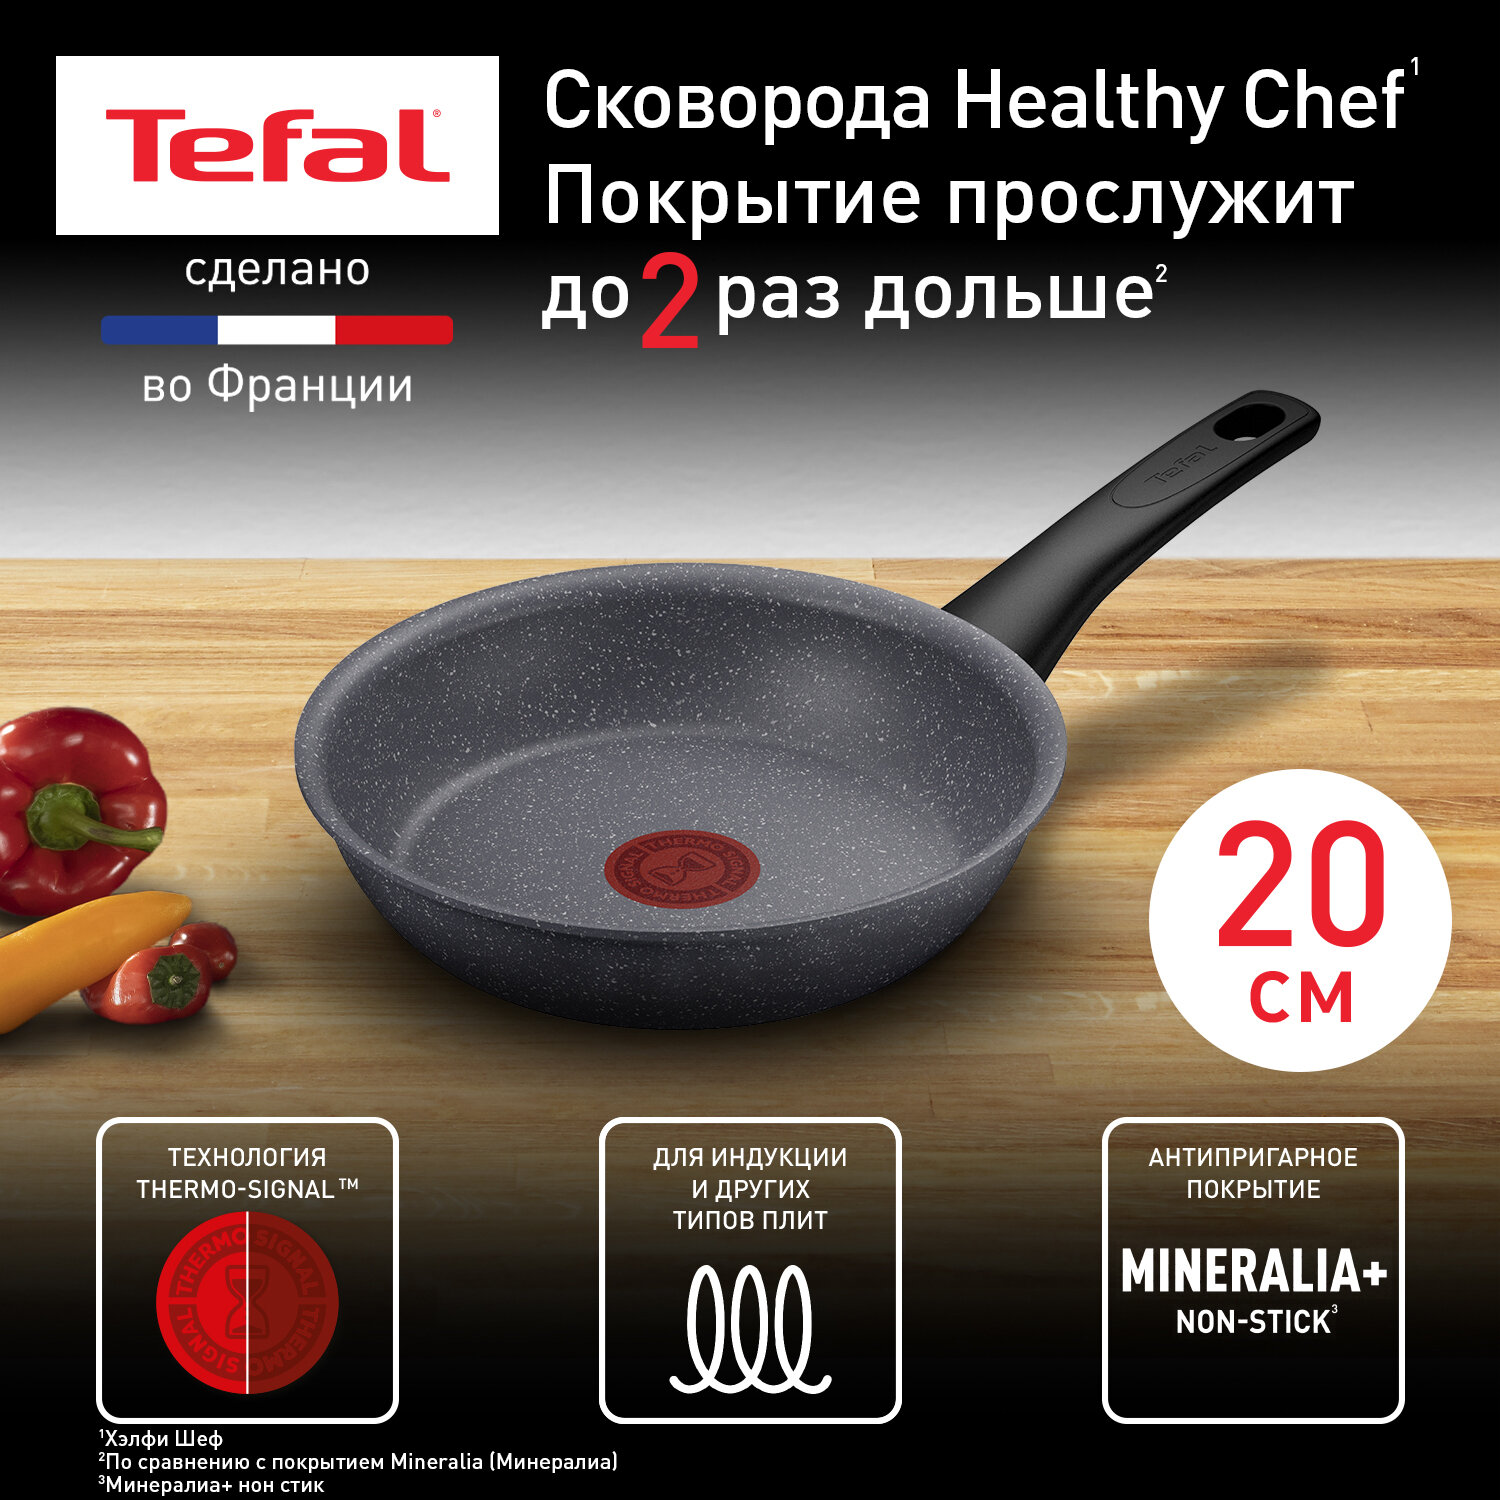 Сковорода Tefal Healthy Chef G1500223, диаметр 20 см, с индикатором температуры, с антипригарным покрытием, для газовых, электрических и индукционных плит, сделано во Франции